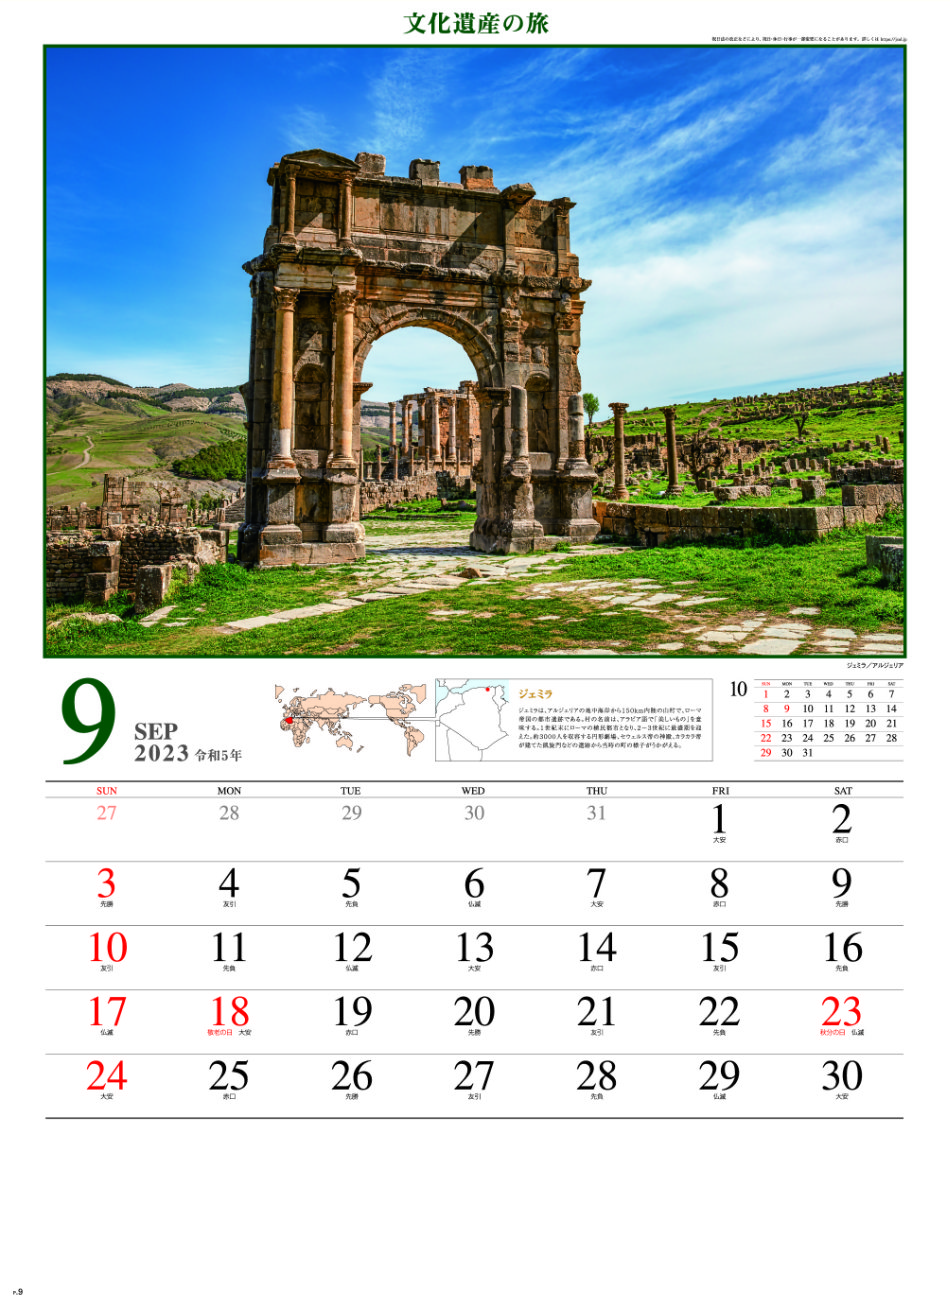 9月 ジェミラ(アルジェリア) 文化遺産の旅(ユネスコ世界遺産） 2023年カレンダーの画像